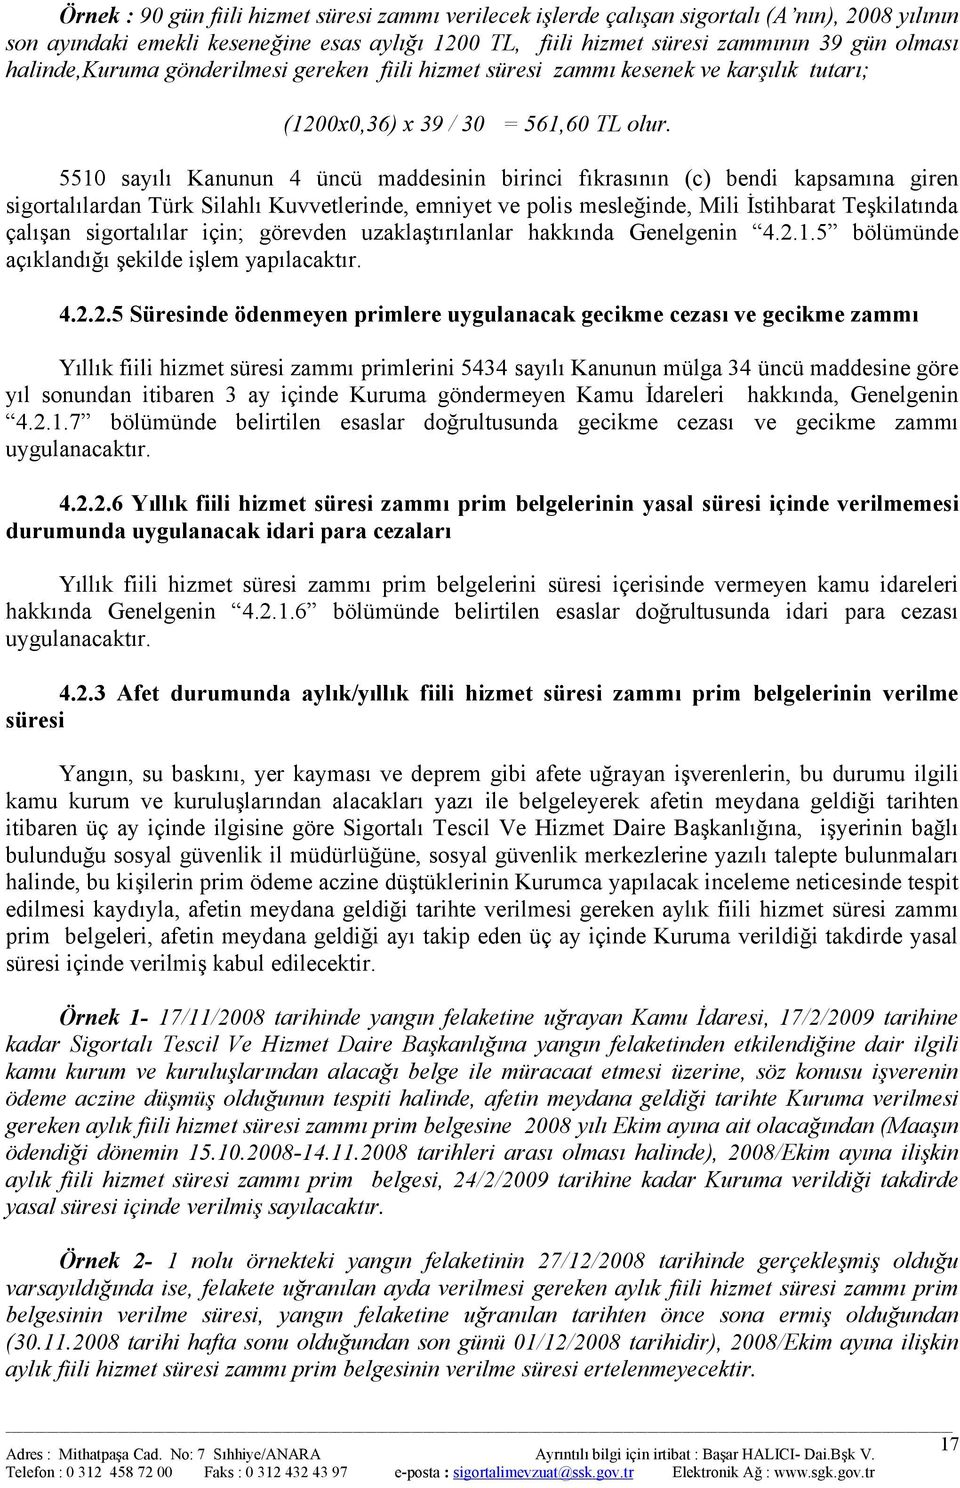 5510 sayılı Kanunun 4 üncü maddesinin birinci fıkrasının (c) bendi kapsamına giren sigortalılardan Türk Silahlı Kuvvetlerinde, emniyet ve polis mesleğinde, Mili İstihbarat Teşkilatında çalışan